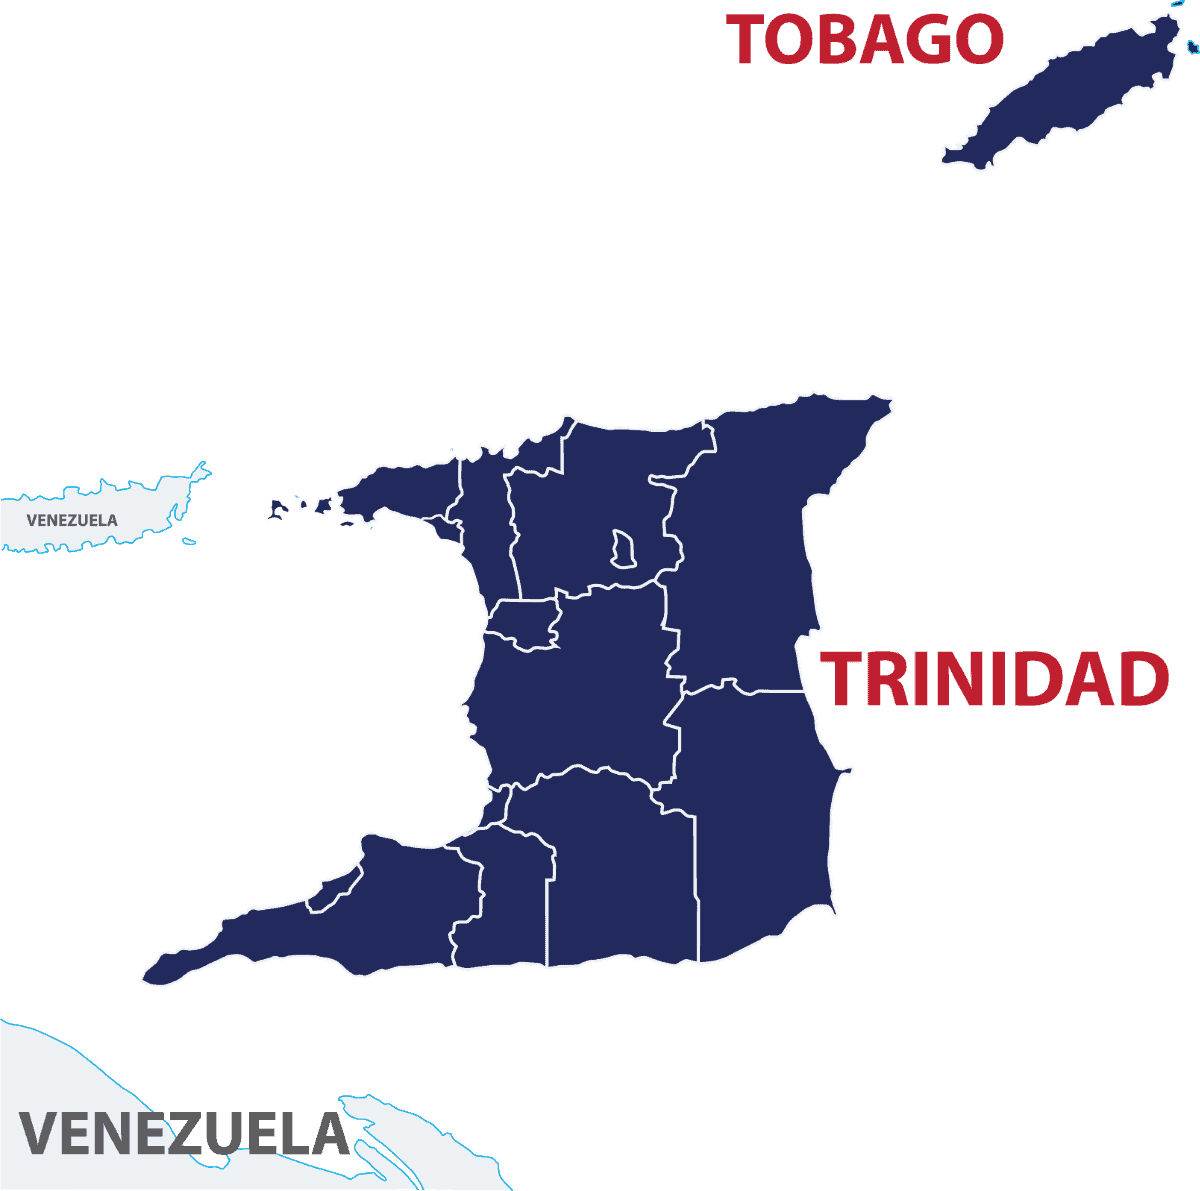 Trinidad Tobago Deployments